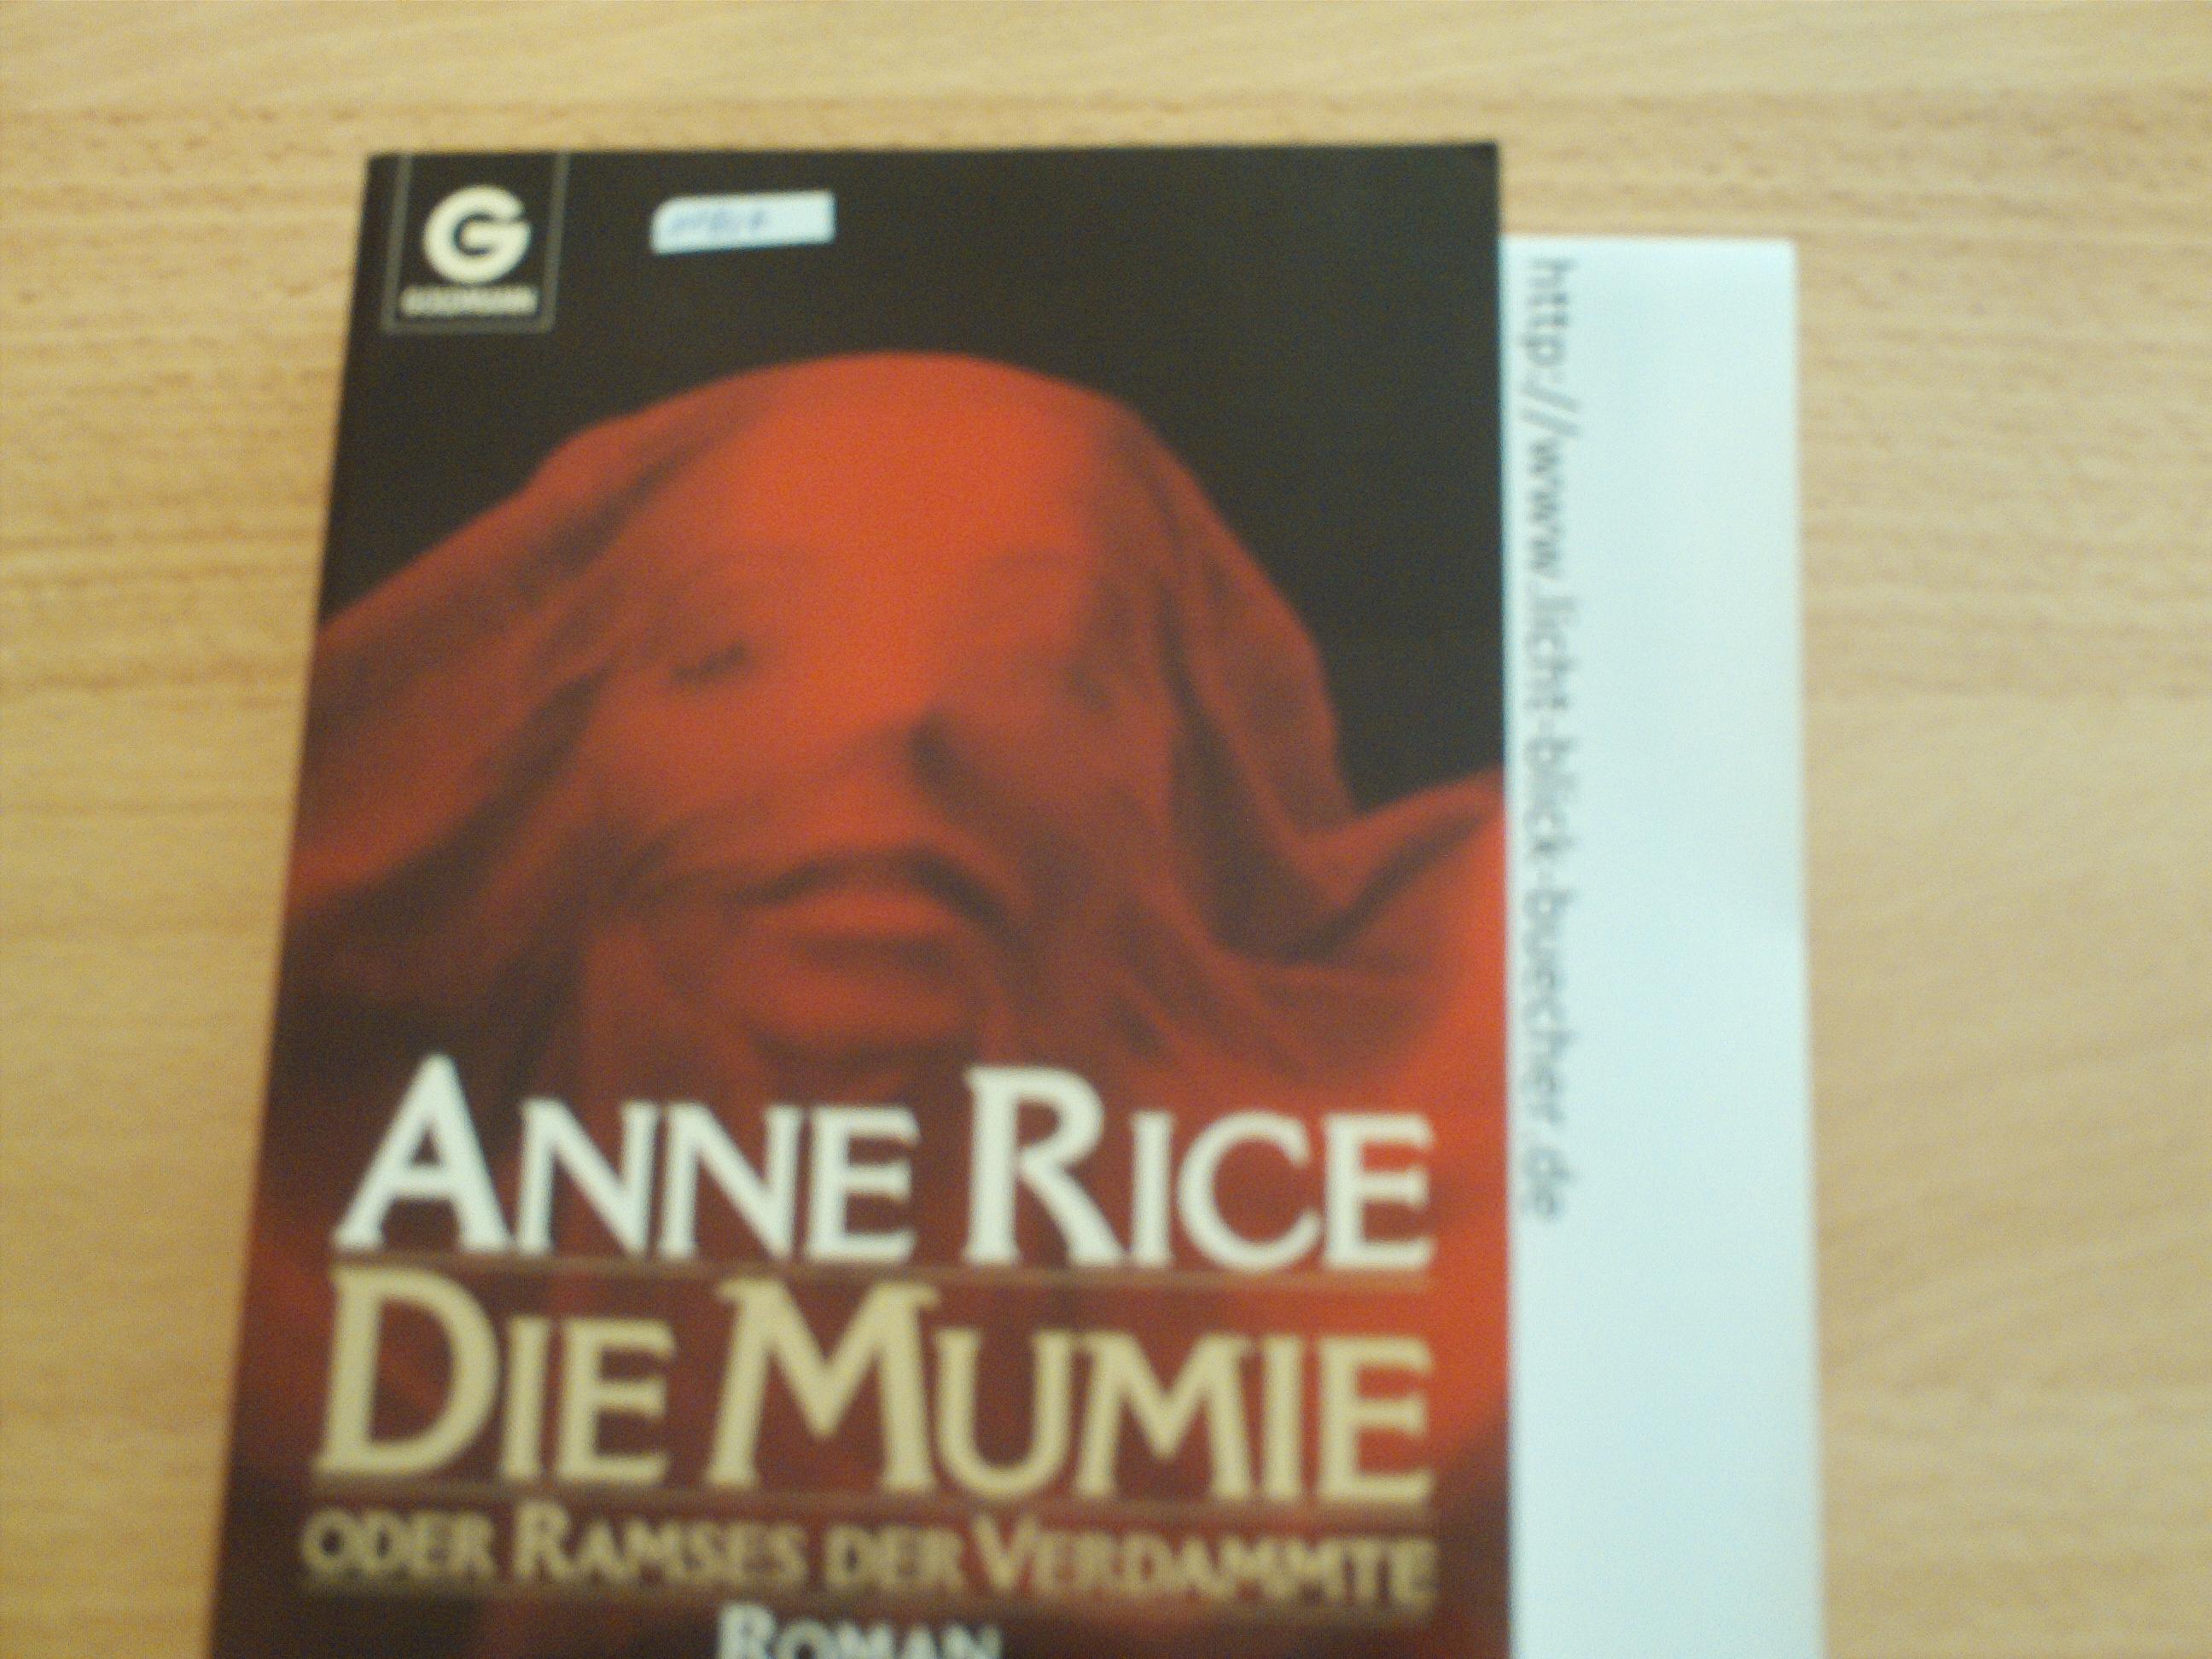 Die Mumie oder Ramses der VerdammteAnne Rice